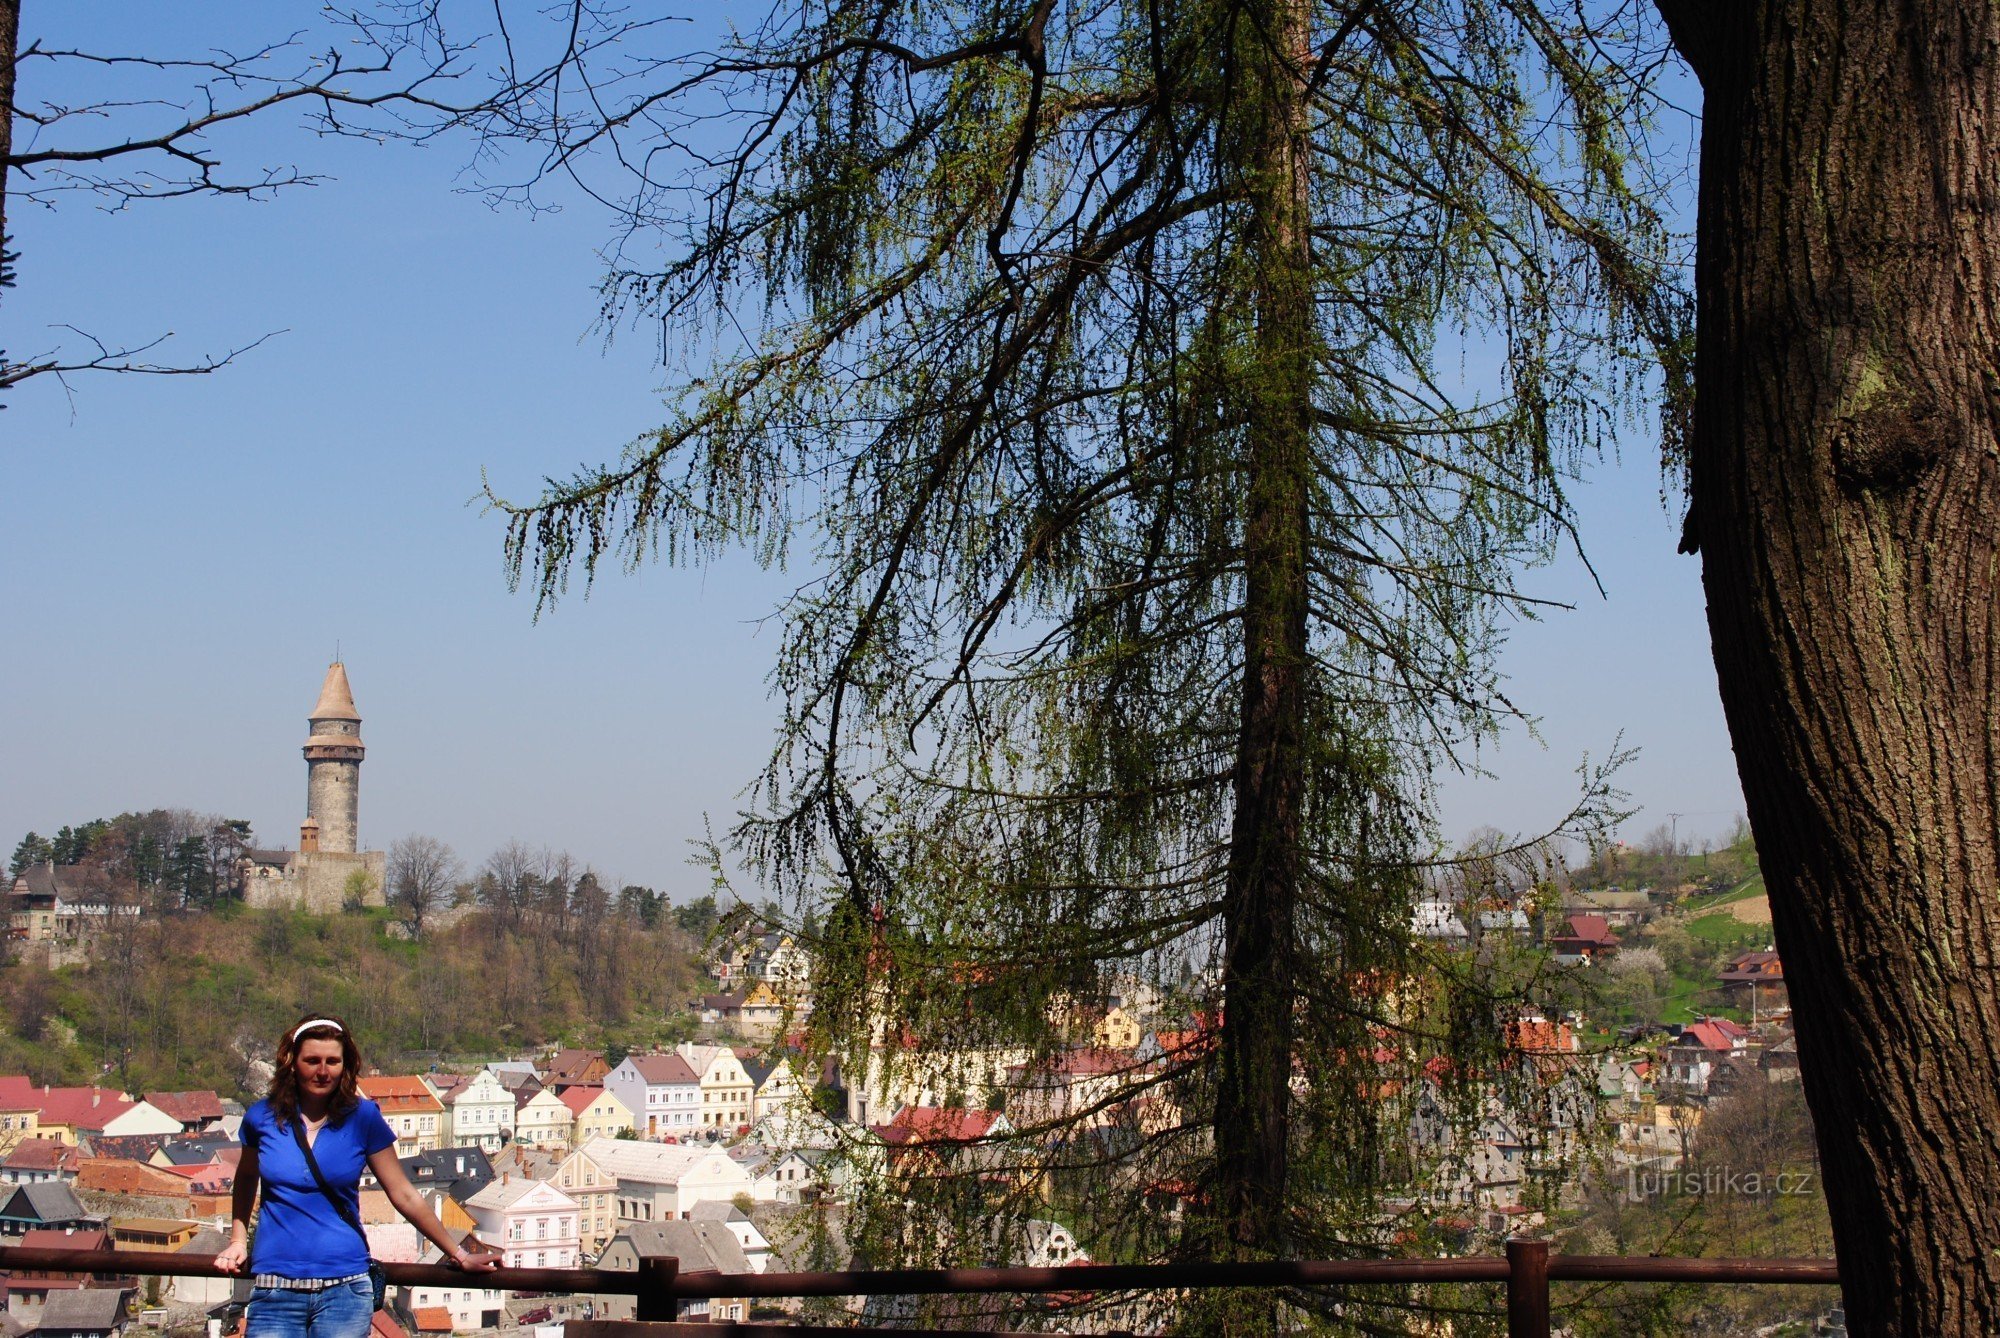 pogled iz špilje Šípka na povijesni dio grada s cilindričnom kulom Trúba